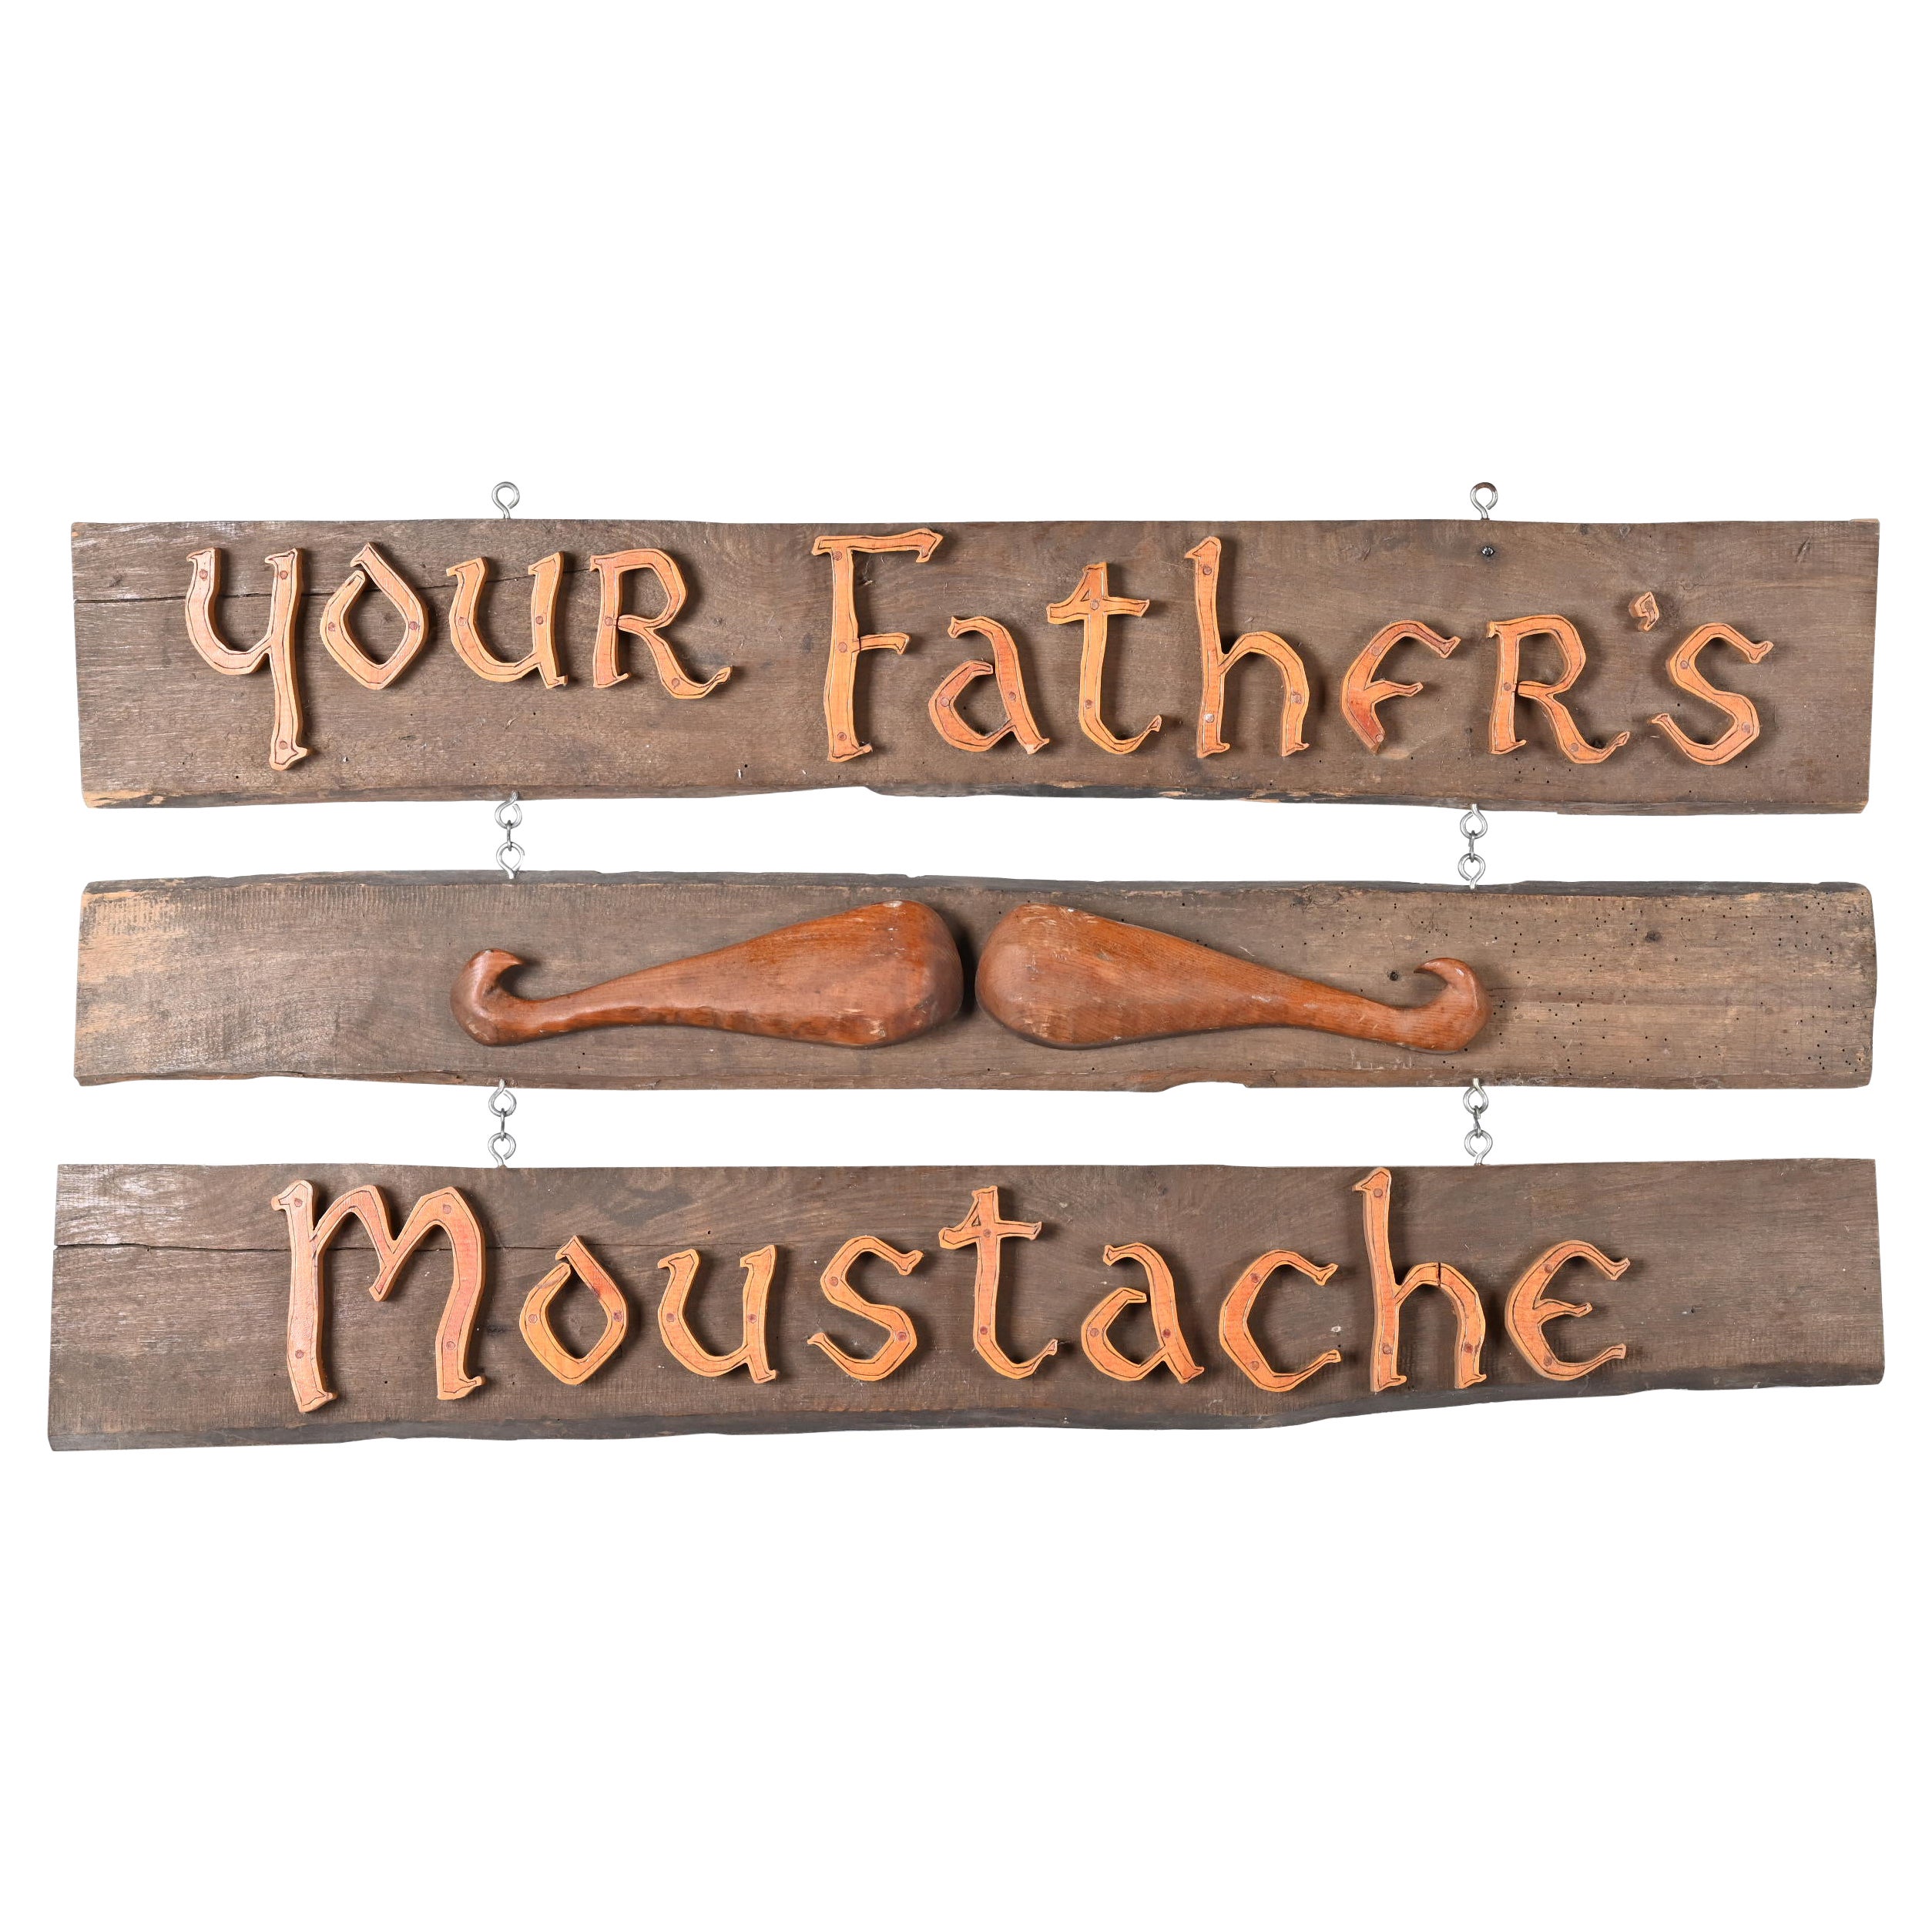 Vintage "Your Father's Moustache" Wooden Pub Sign